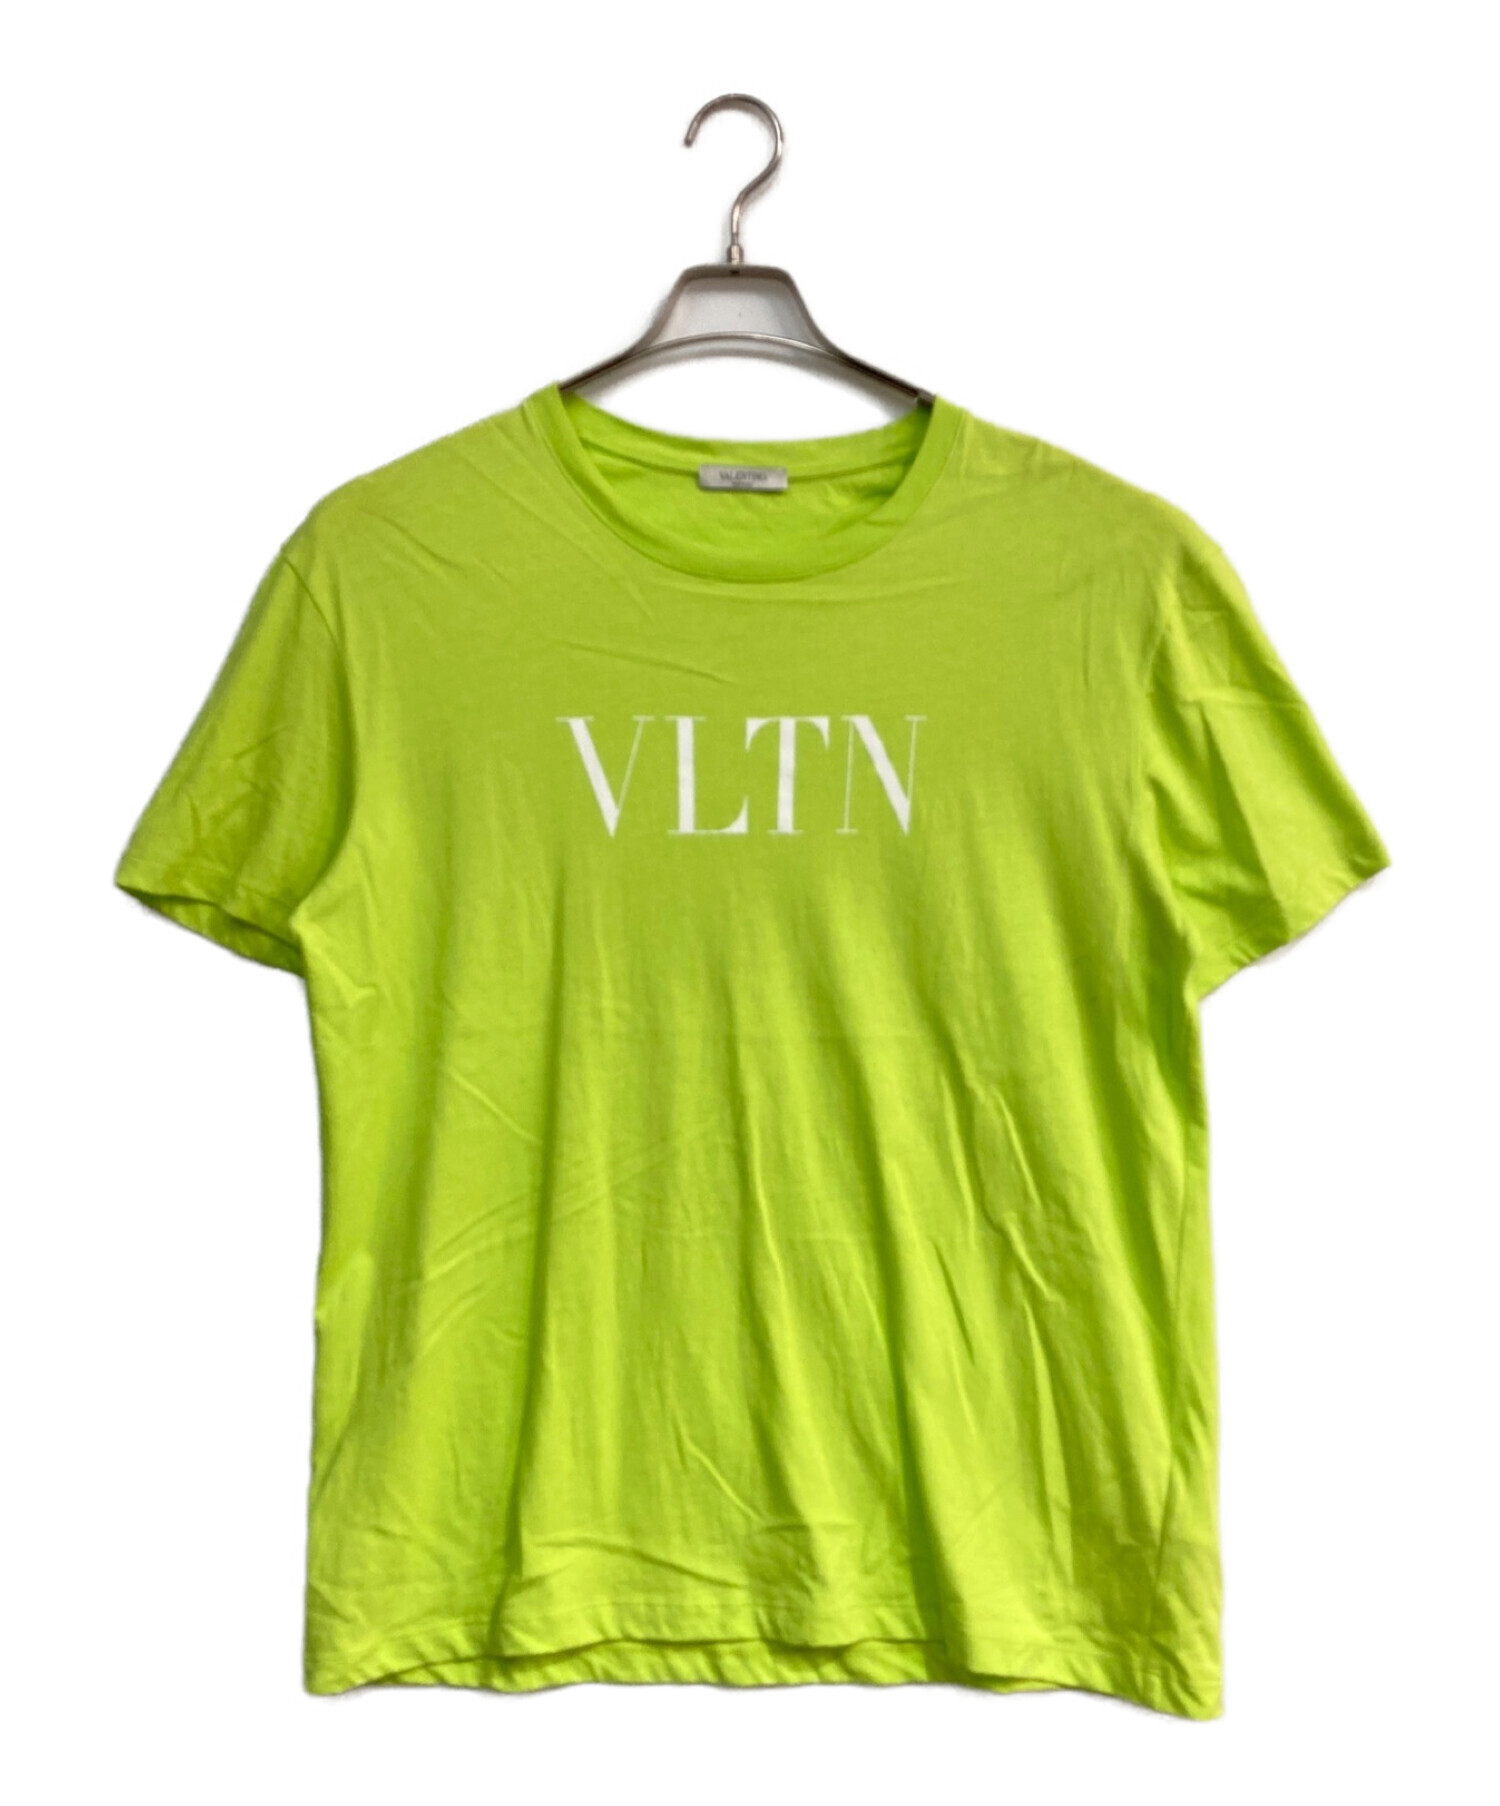 中古・古着通販】VALENTINO (ヴァレンティノ) VLTNロゴプリントTシャツ ...